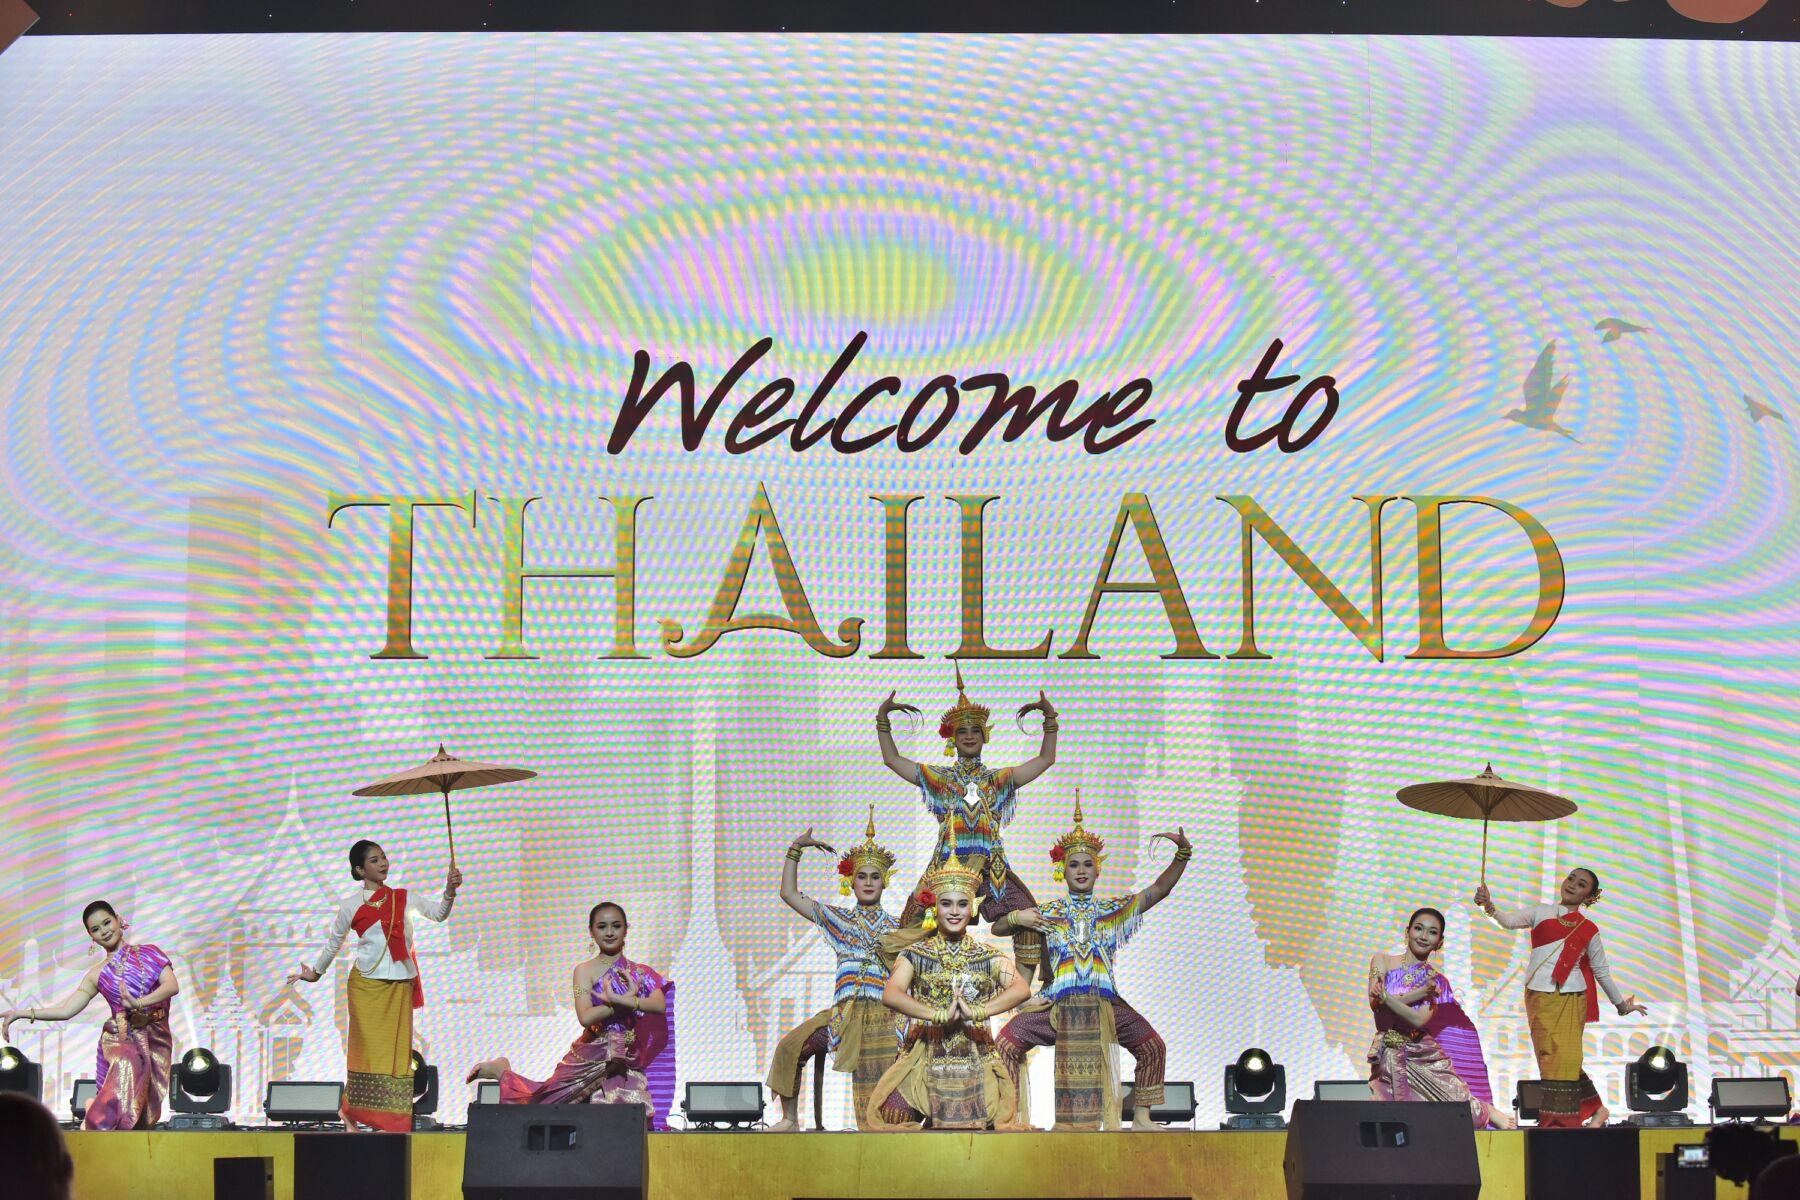 สยามพิวรรธน์ ต้อนรับคณะผู้นำสตรีโลกกว่า 51 ประเทศ ในงานประชุม สุดยอด ผู้นำสตรีโลก 2565 welcome to thailand